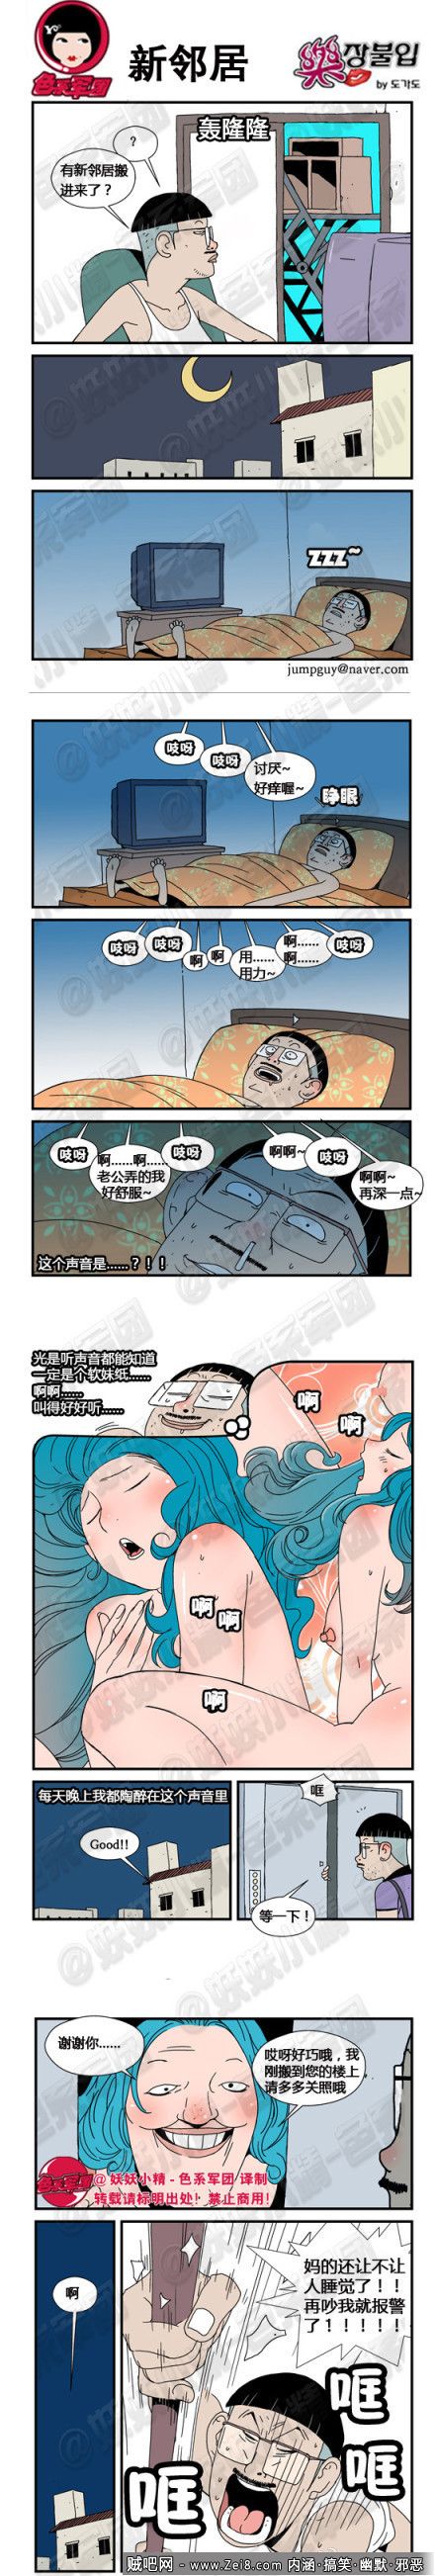 [笑料失眠色系漫画]：夜晚活动需谨慎